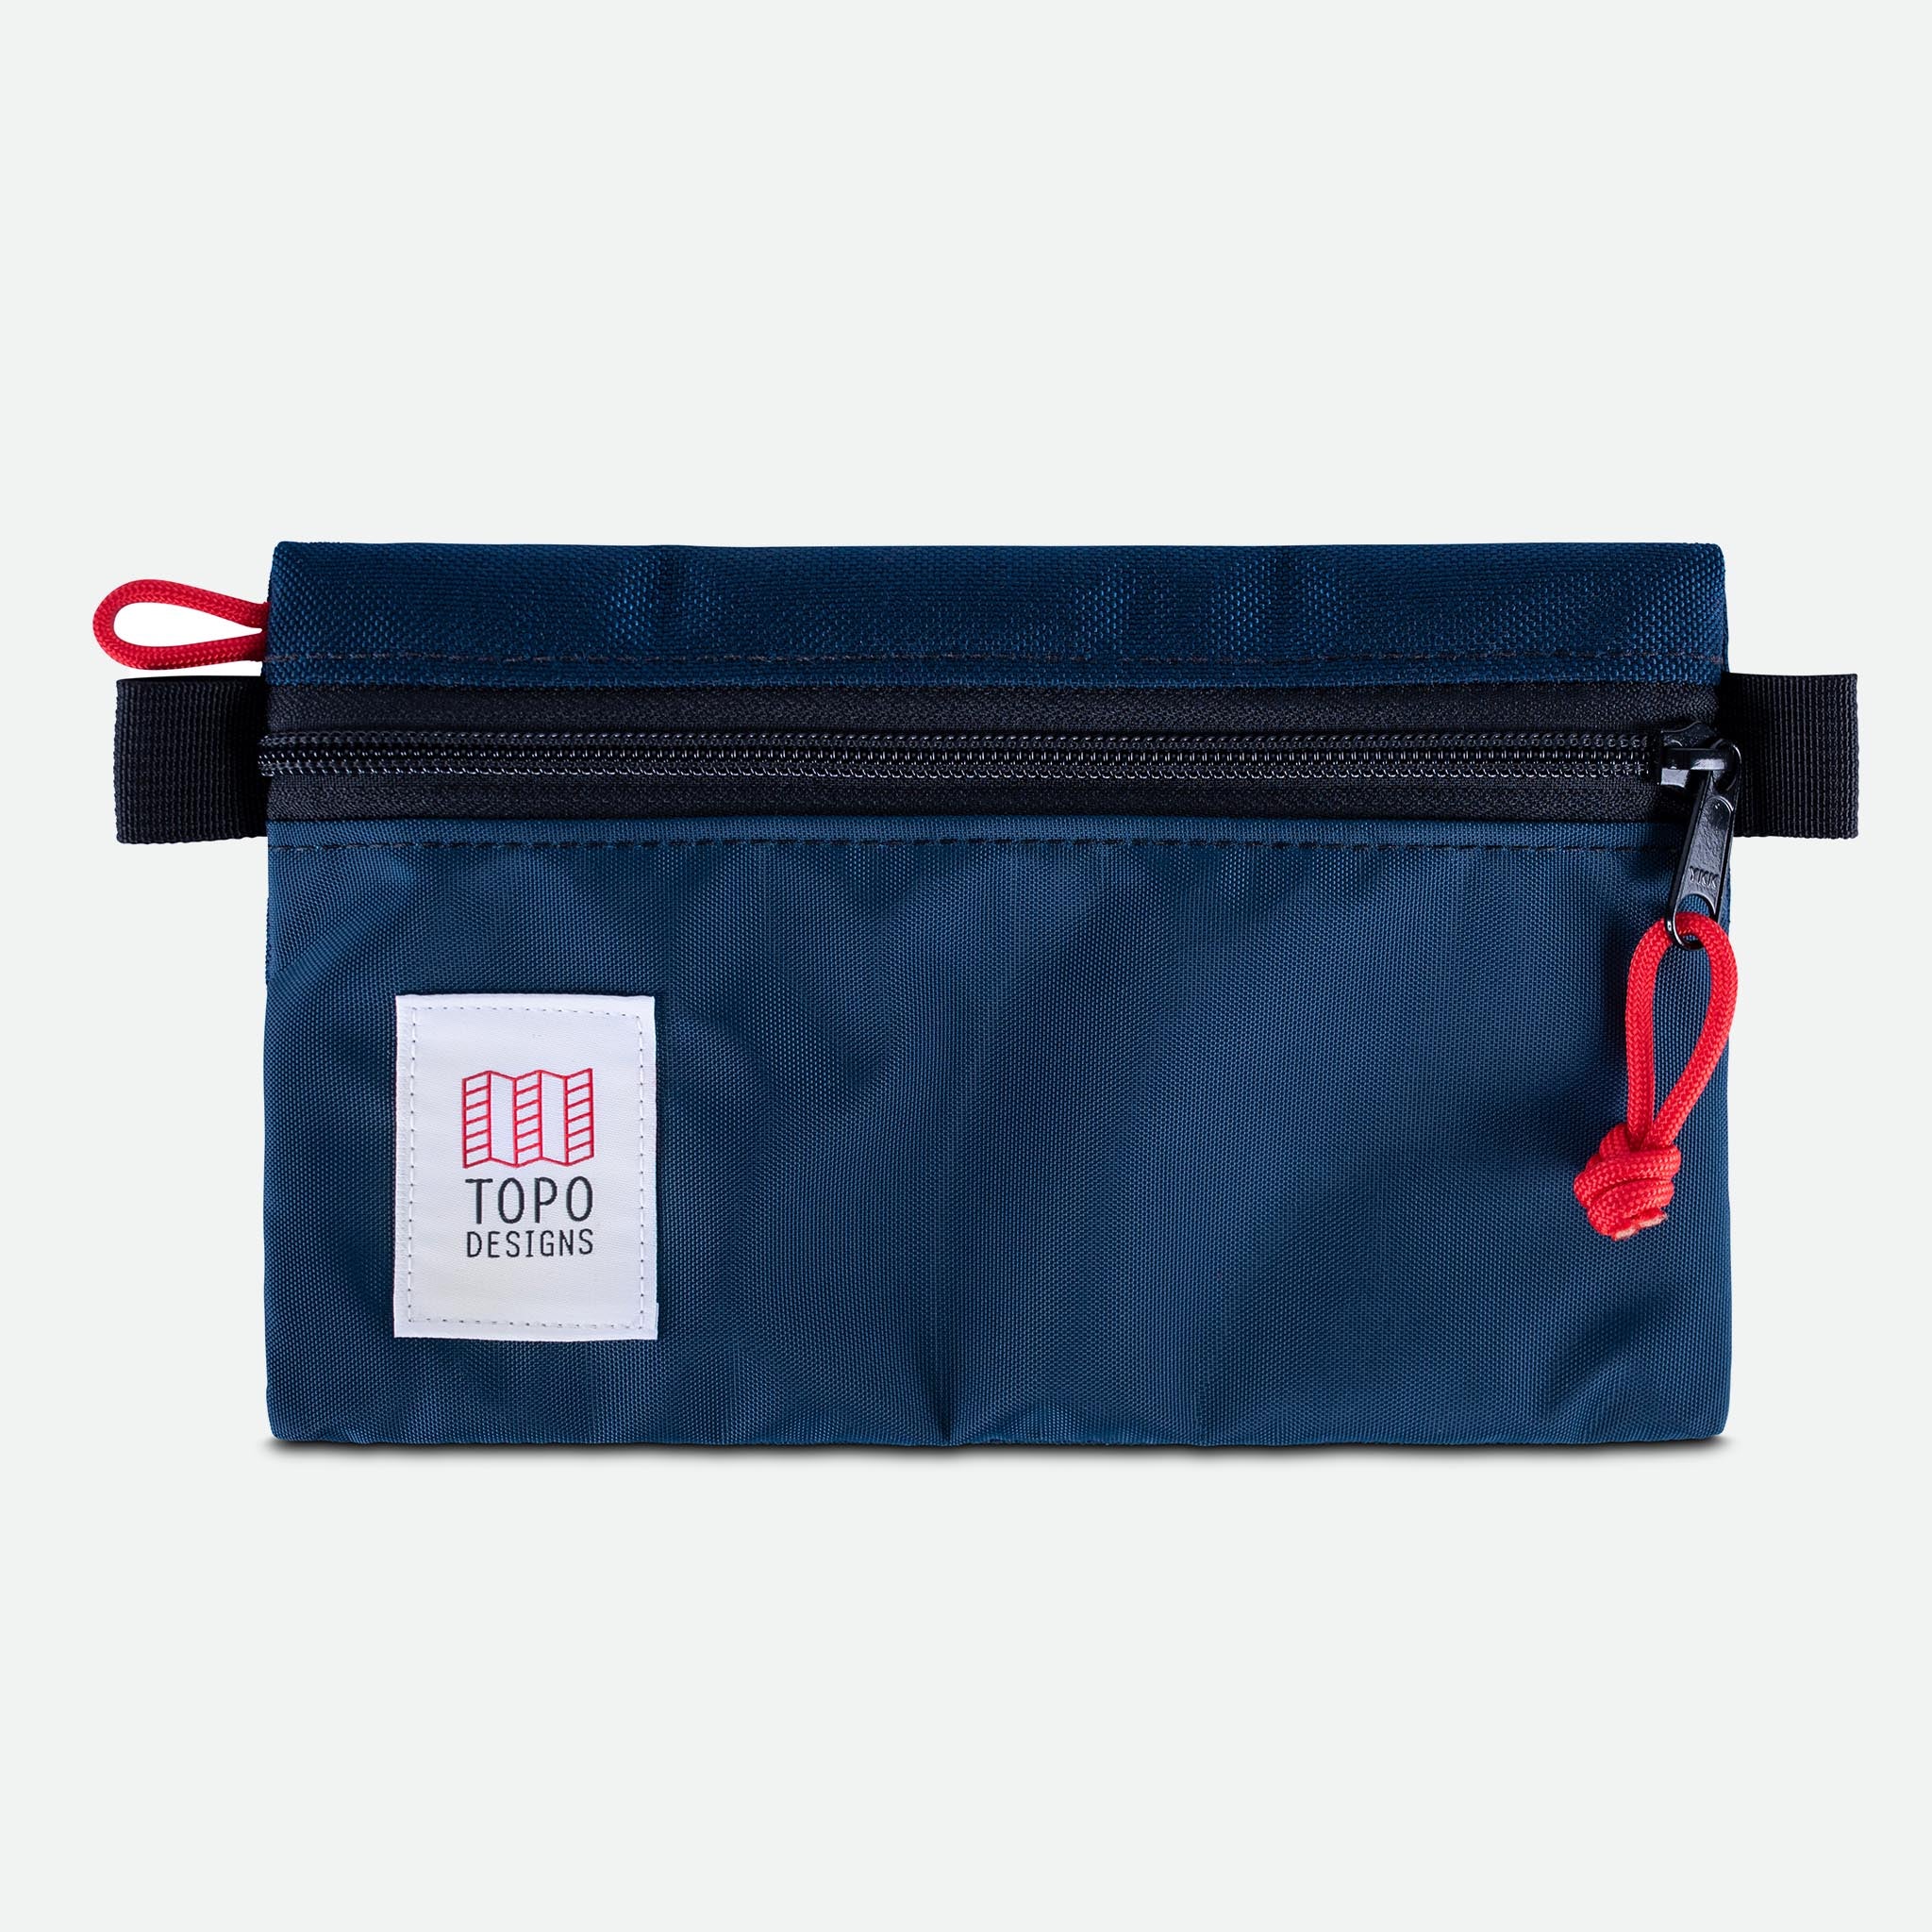 Topo Designs Accessory Bag Small Navy